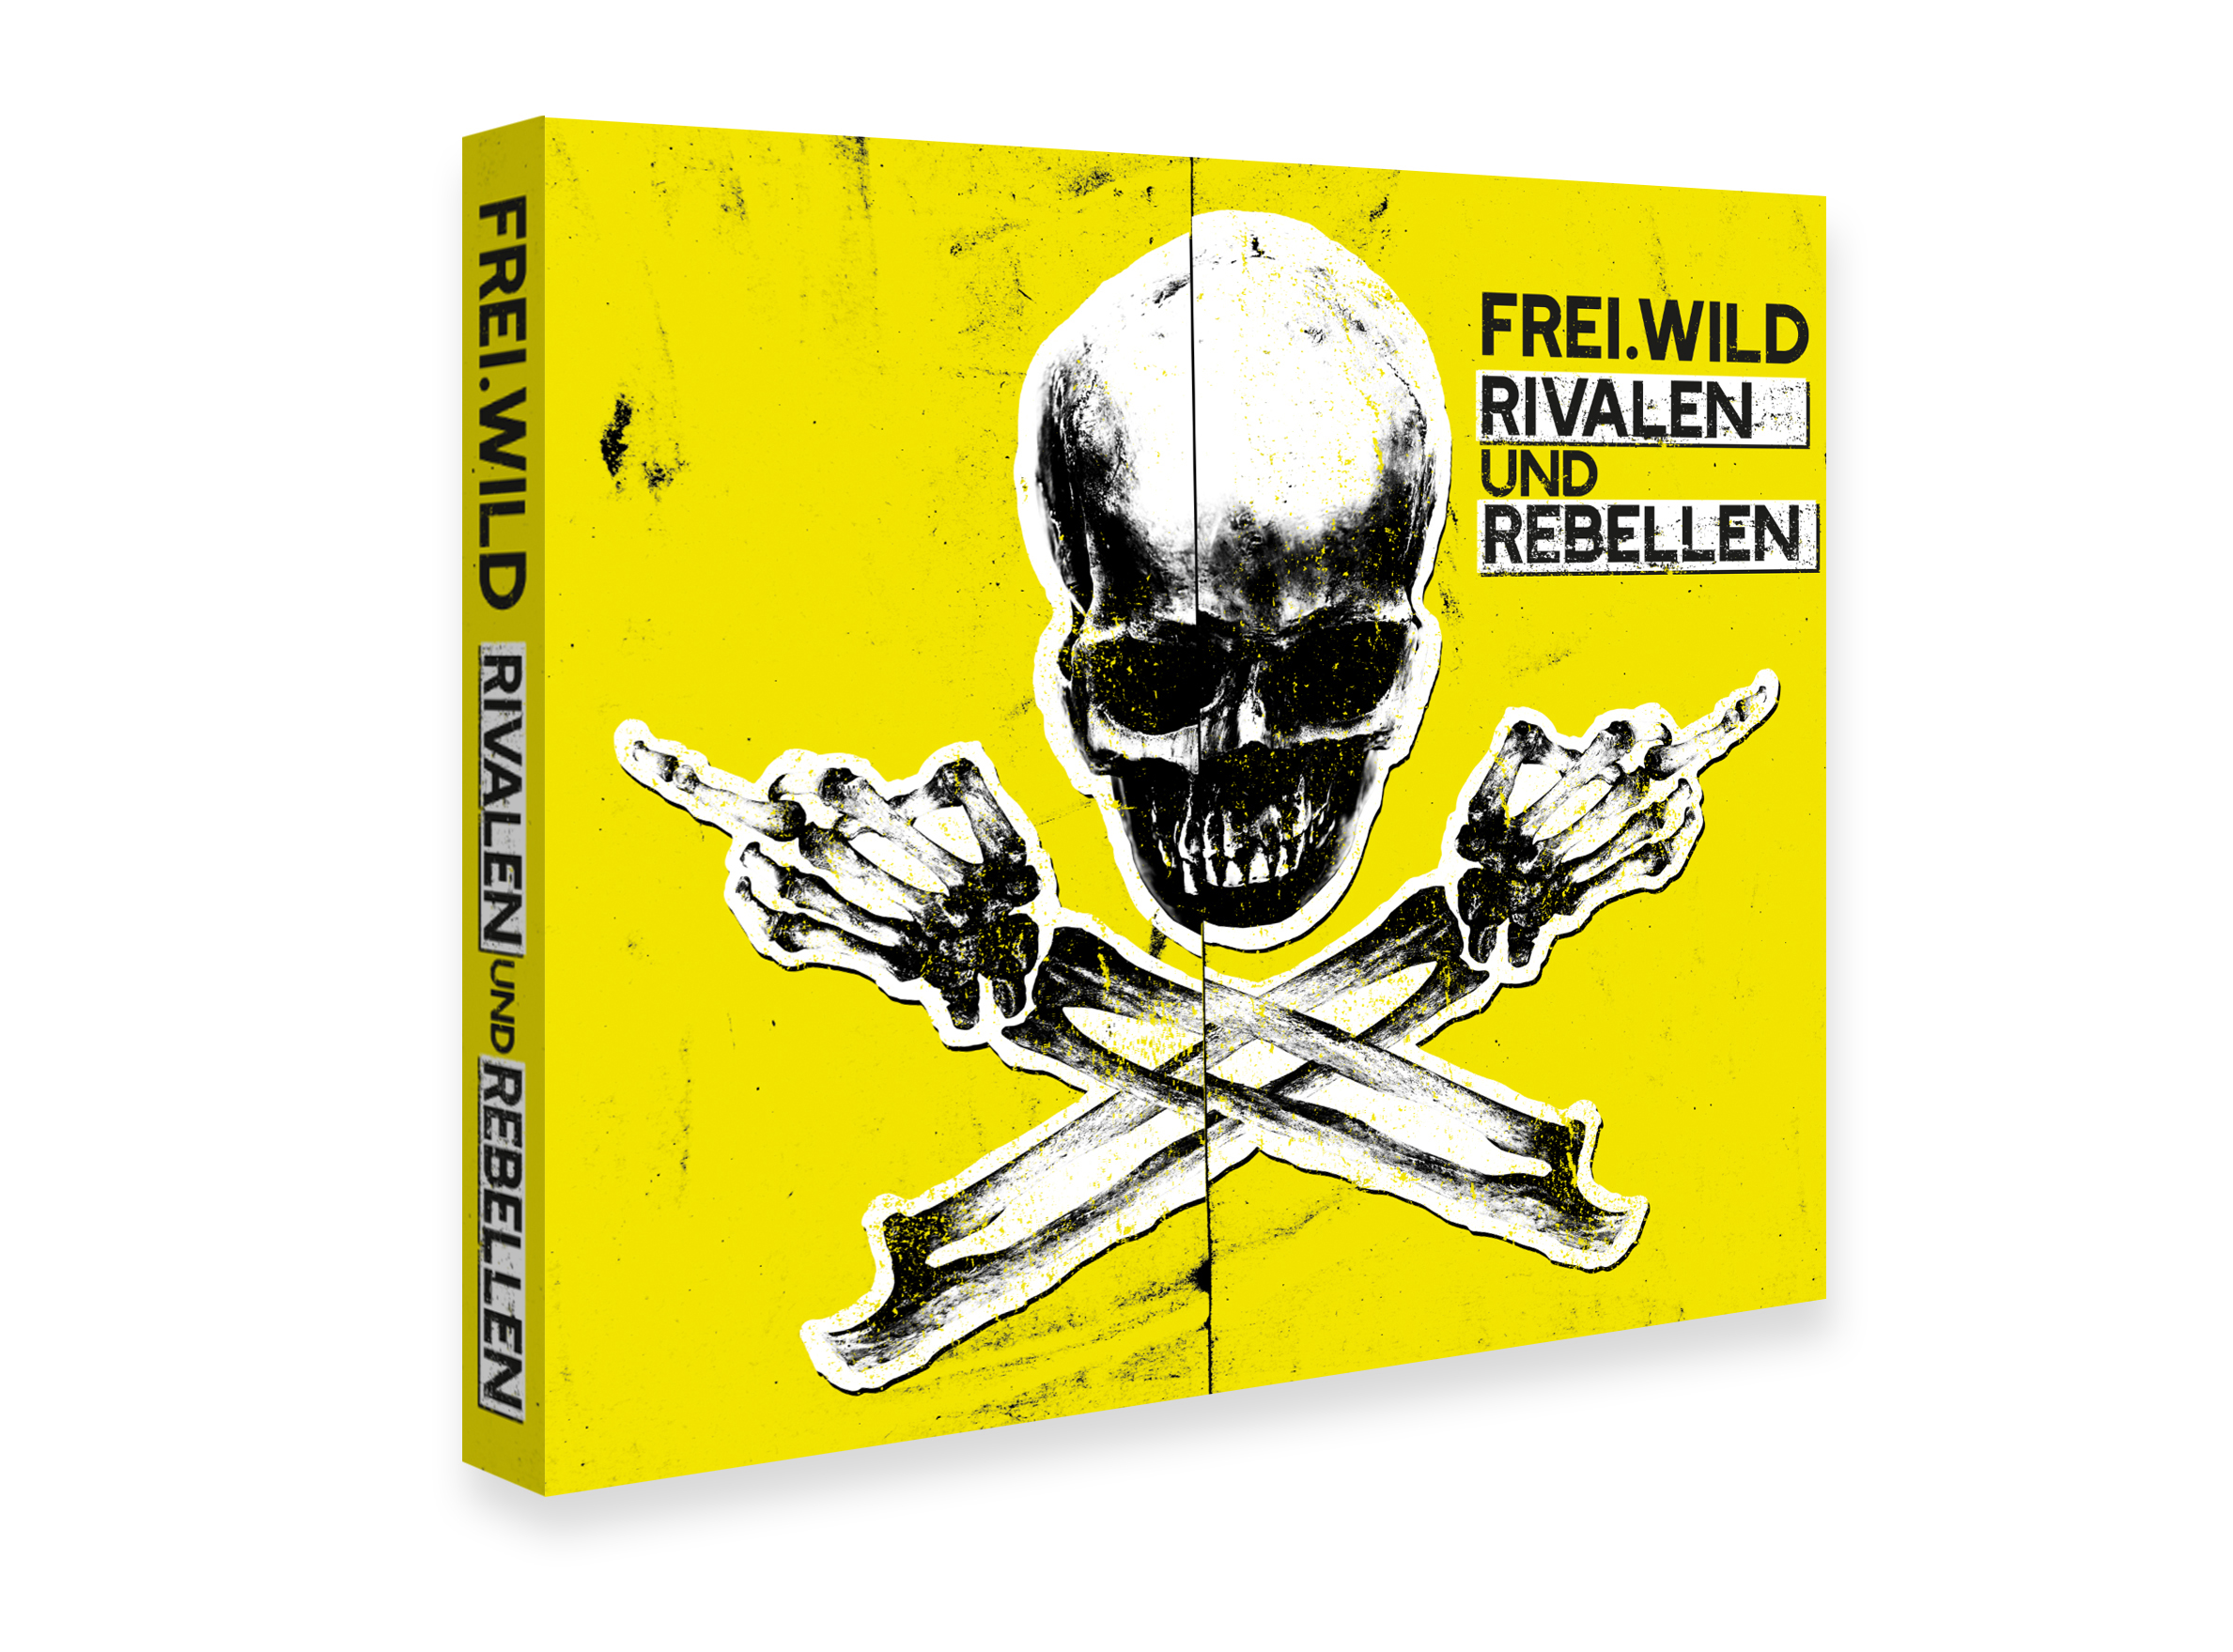 Rivalen (CD) Rebellen - und - Frei.Wild